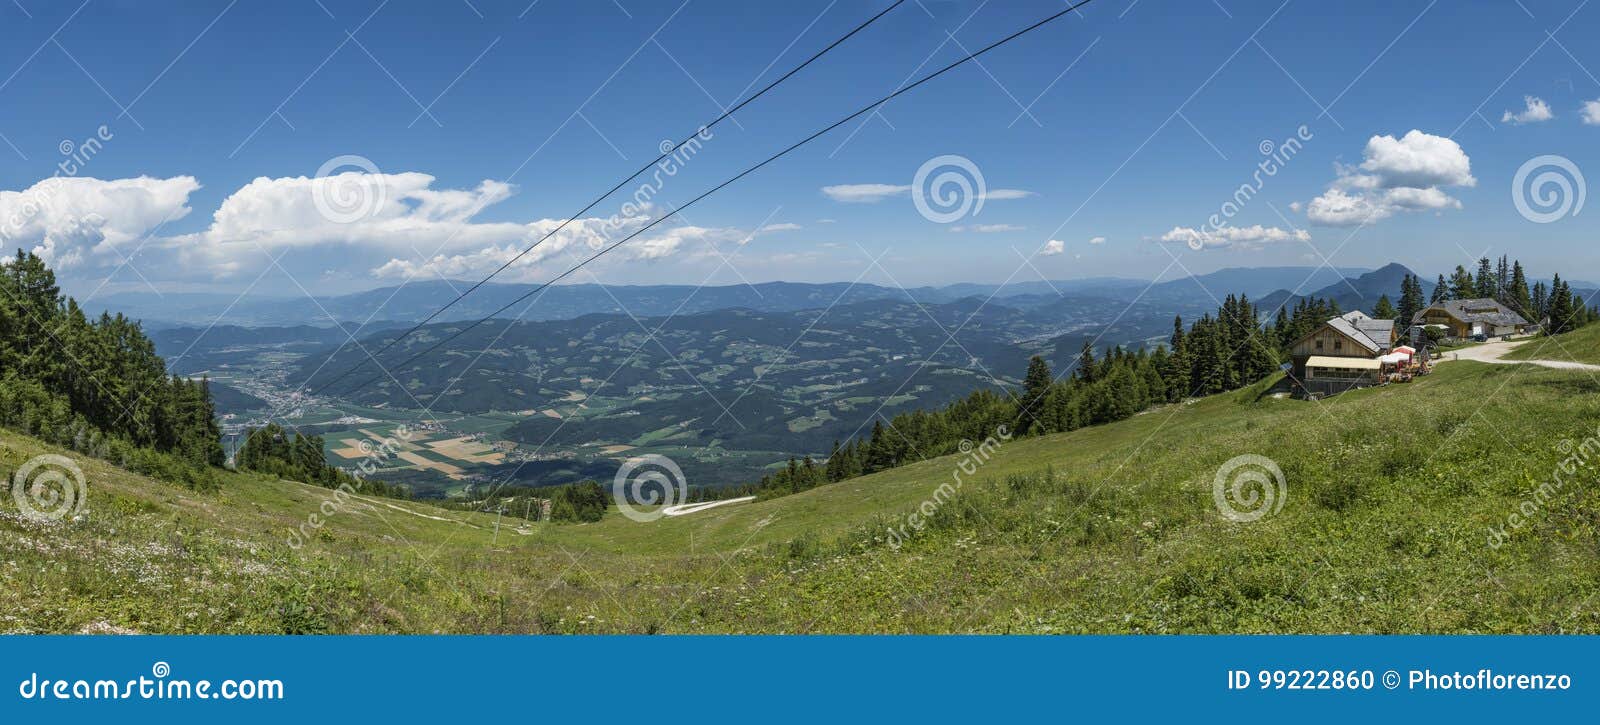 view from gondola top station on mountain petzen